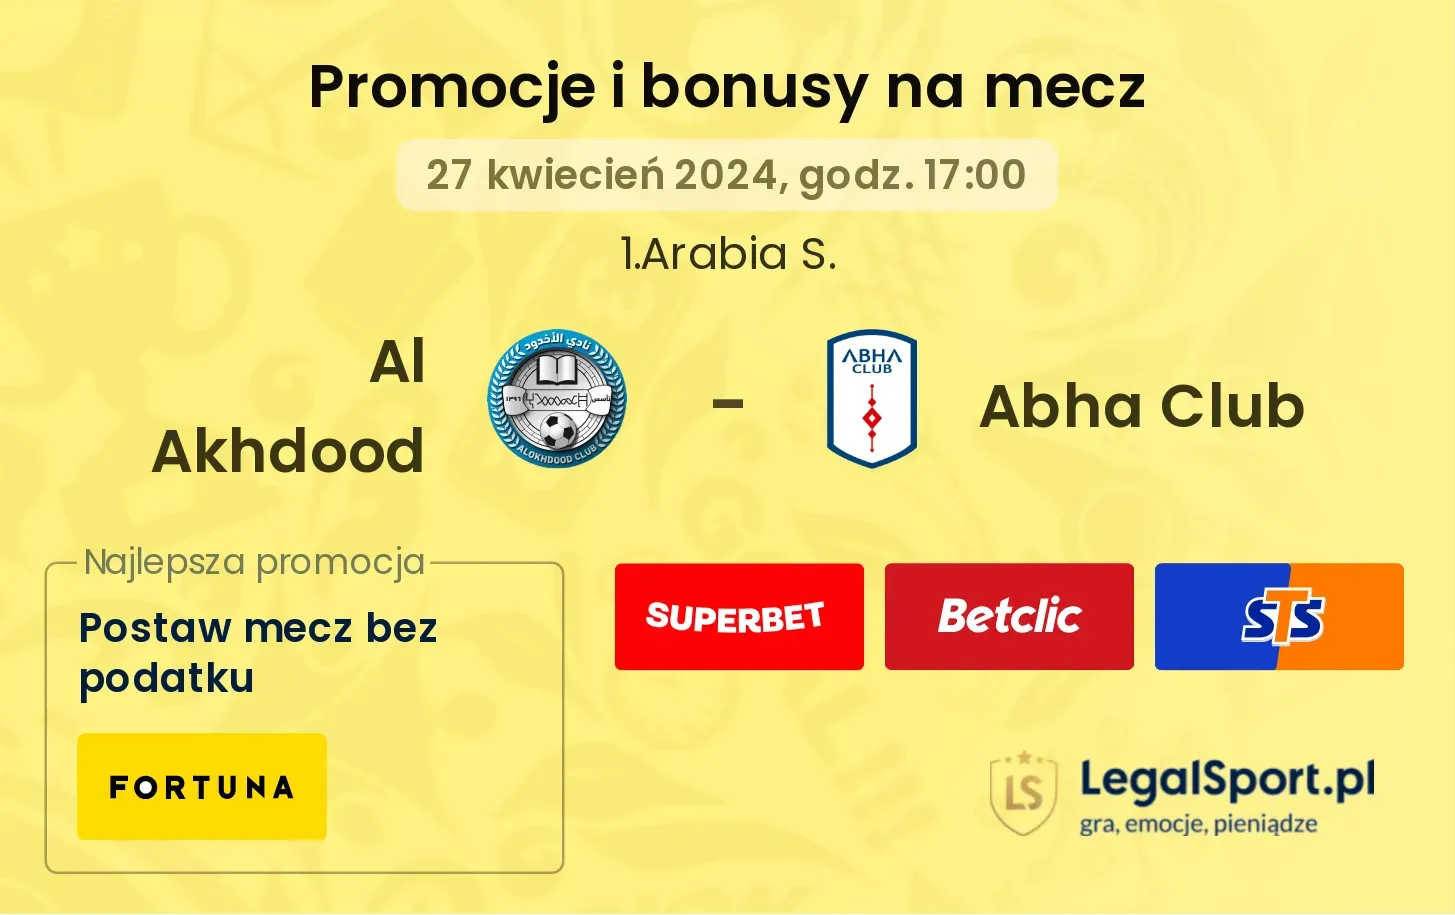 Al Akhdood - Abha Club promocje bonusy na mecz